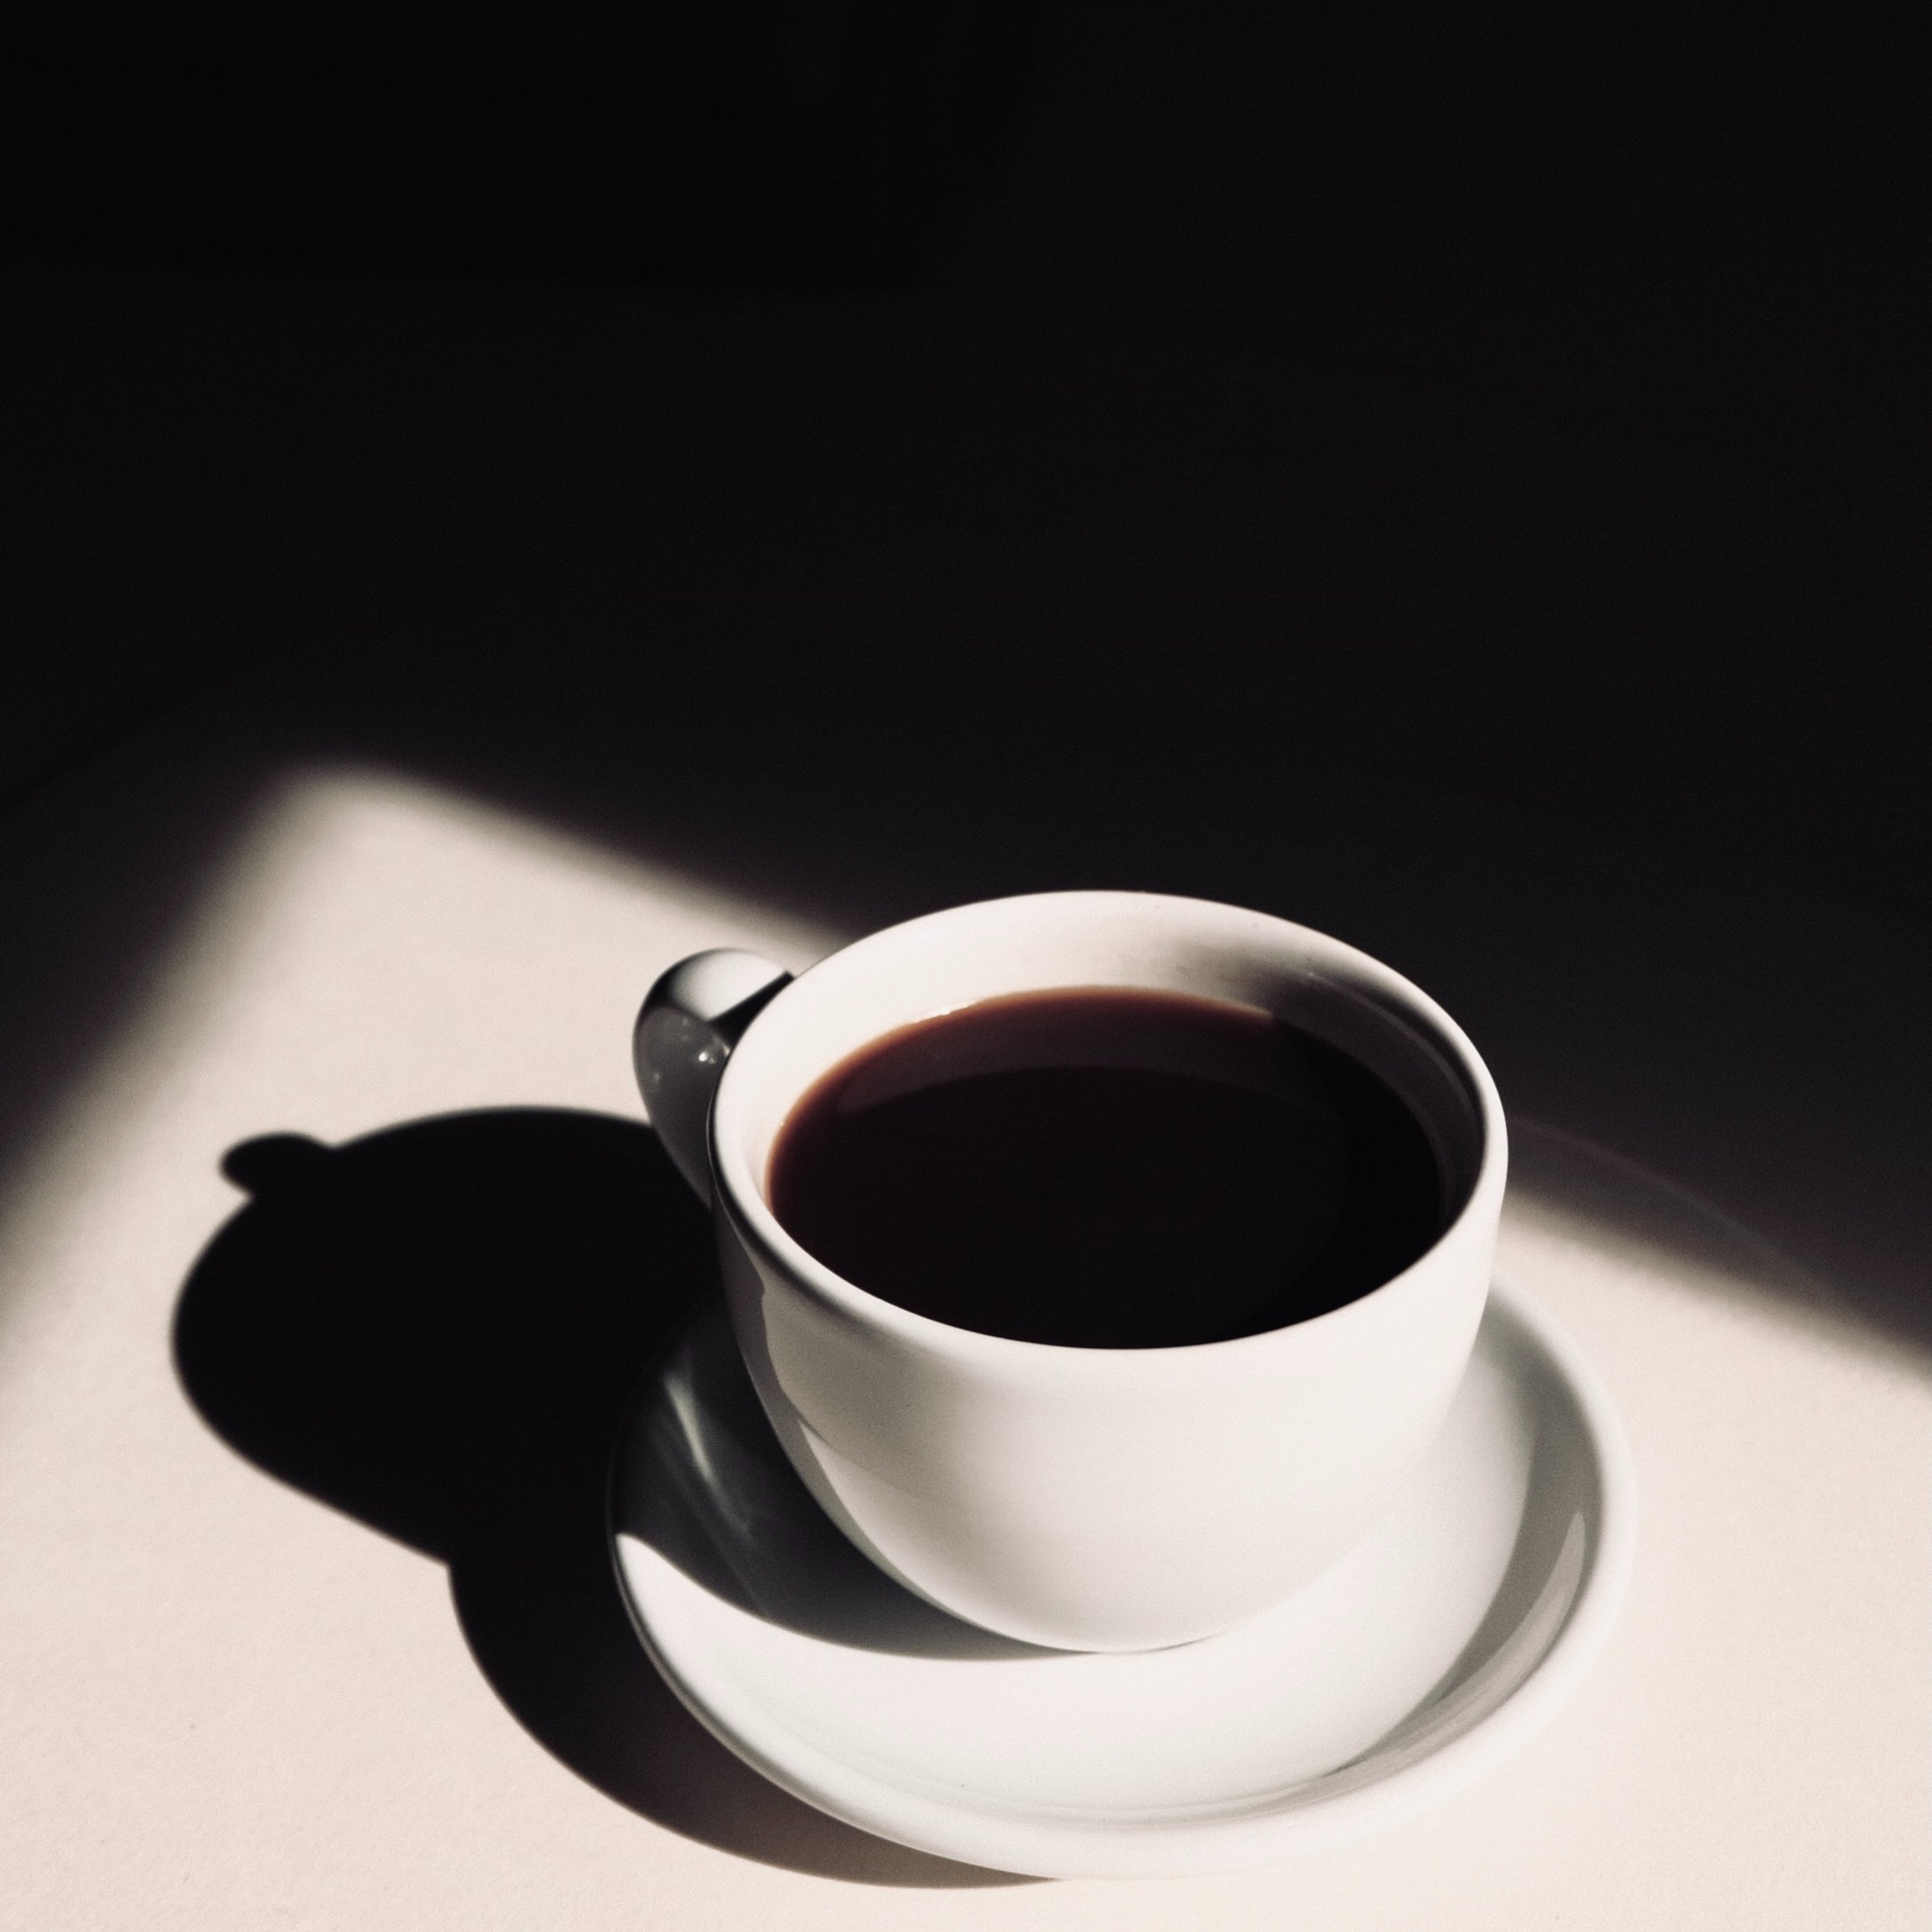 Com pot afectar la cafeïna la teva ansietat